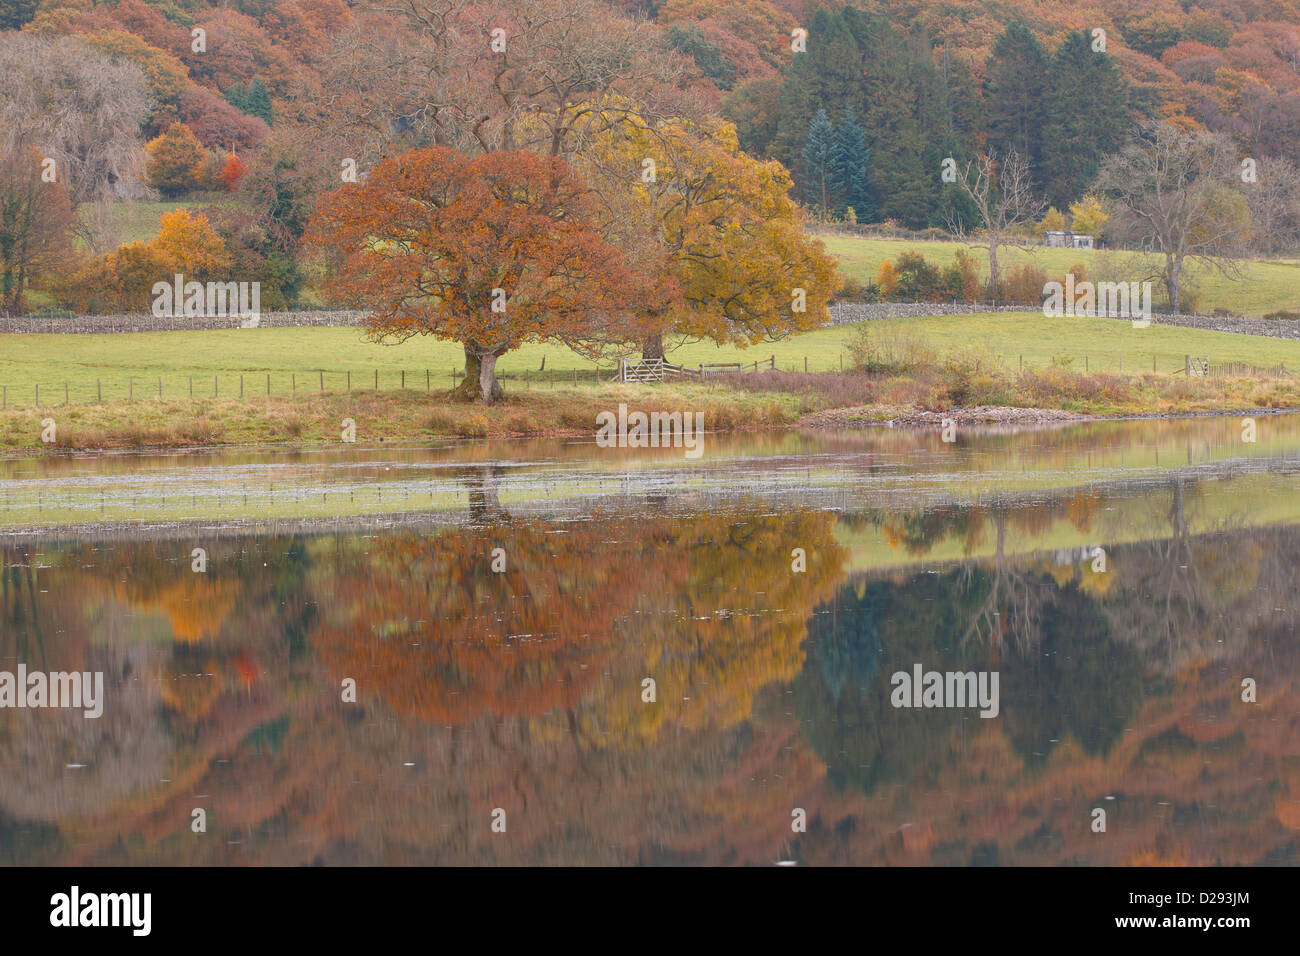 Arbres de chêne à côté d'un lac à l'automne. Esthwaite Water, Lake District, Cumbria. L'Angleterre. Octobre. Banque D'Images